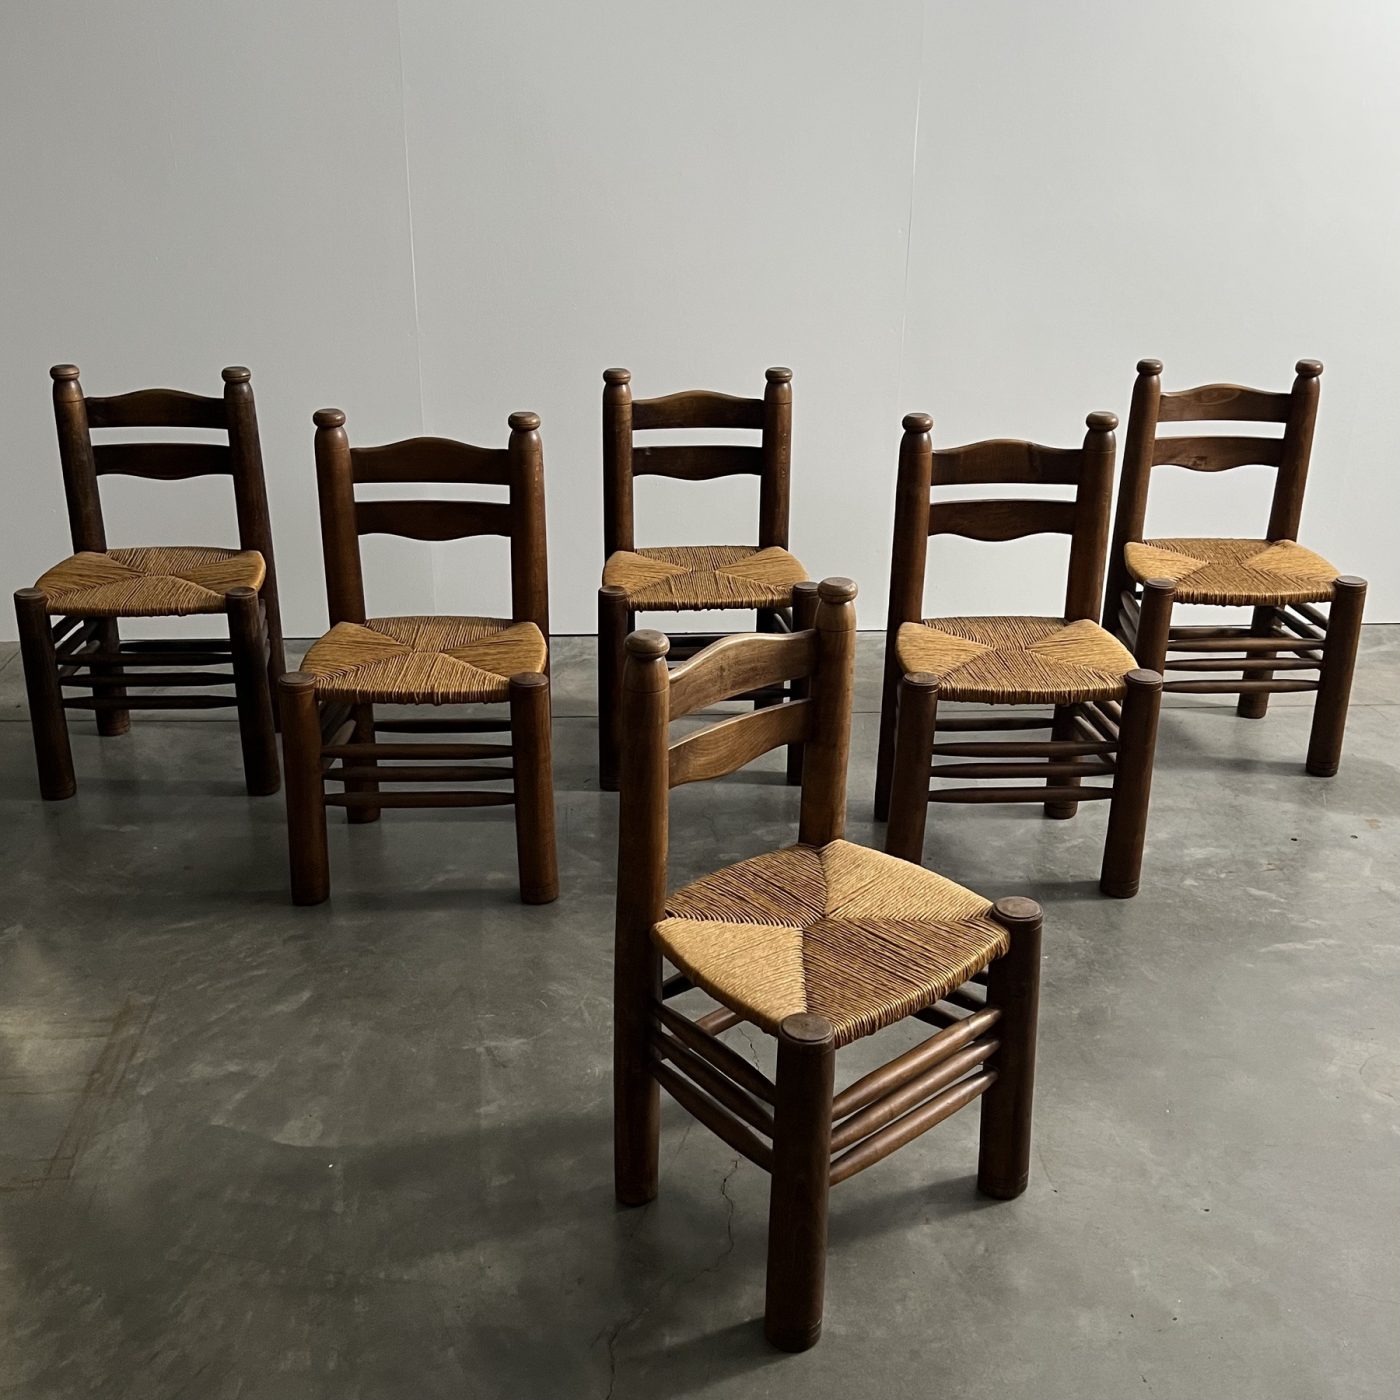 objet-vagabond-dudouyt-chairs0003